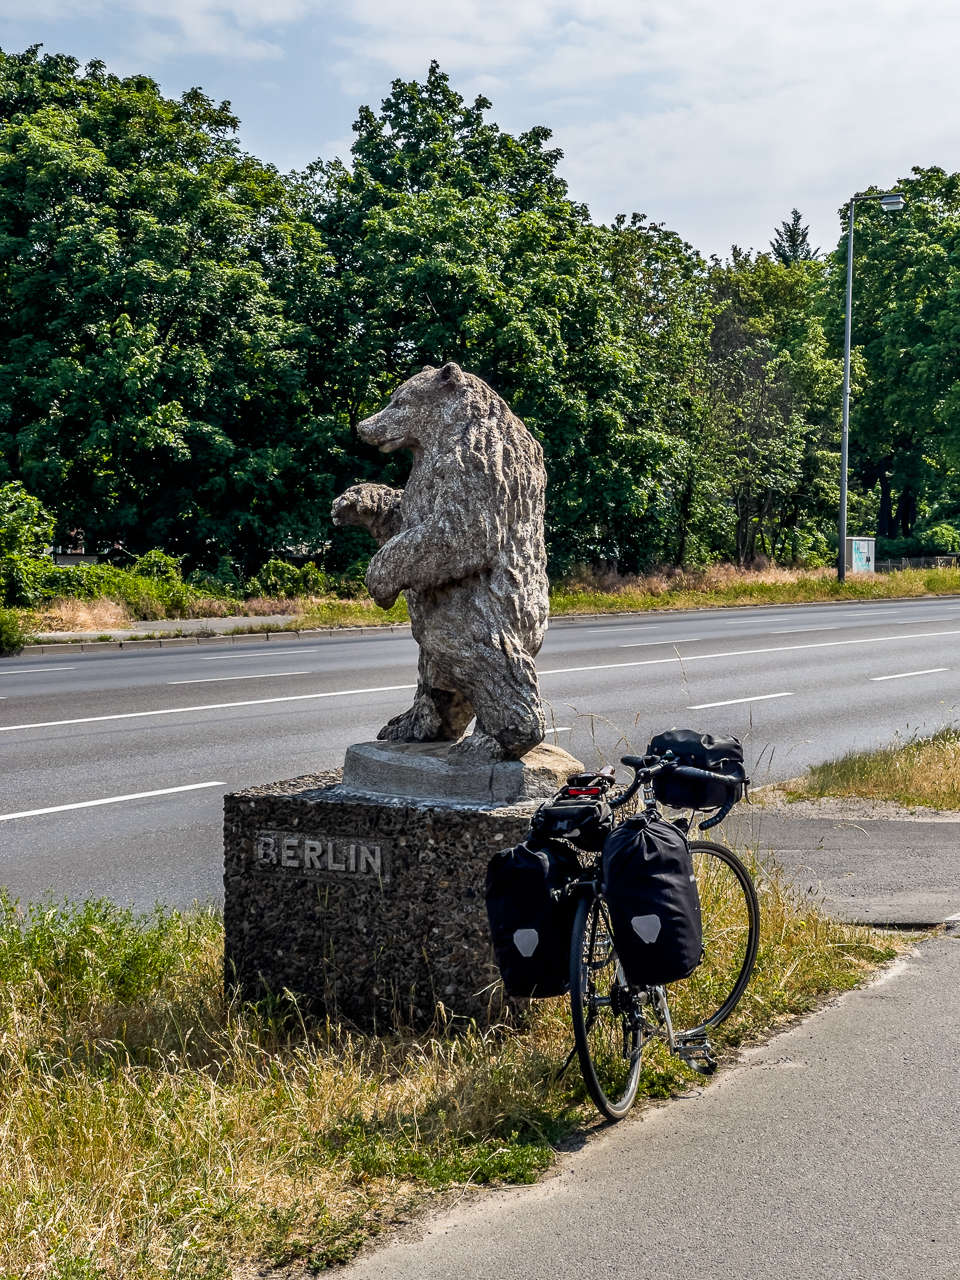 Skulptur eines Bären mit Beschriftung "Berlin" an einer breiten Straße, daneben steht ein Fahrrad mit ReisePackTaschen